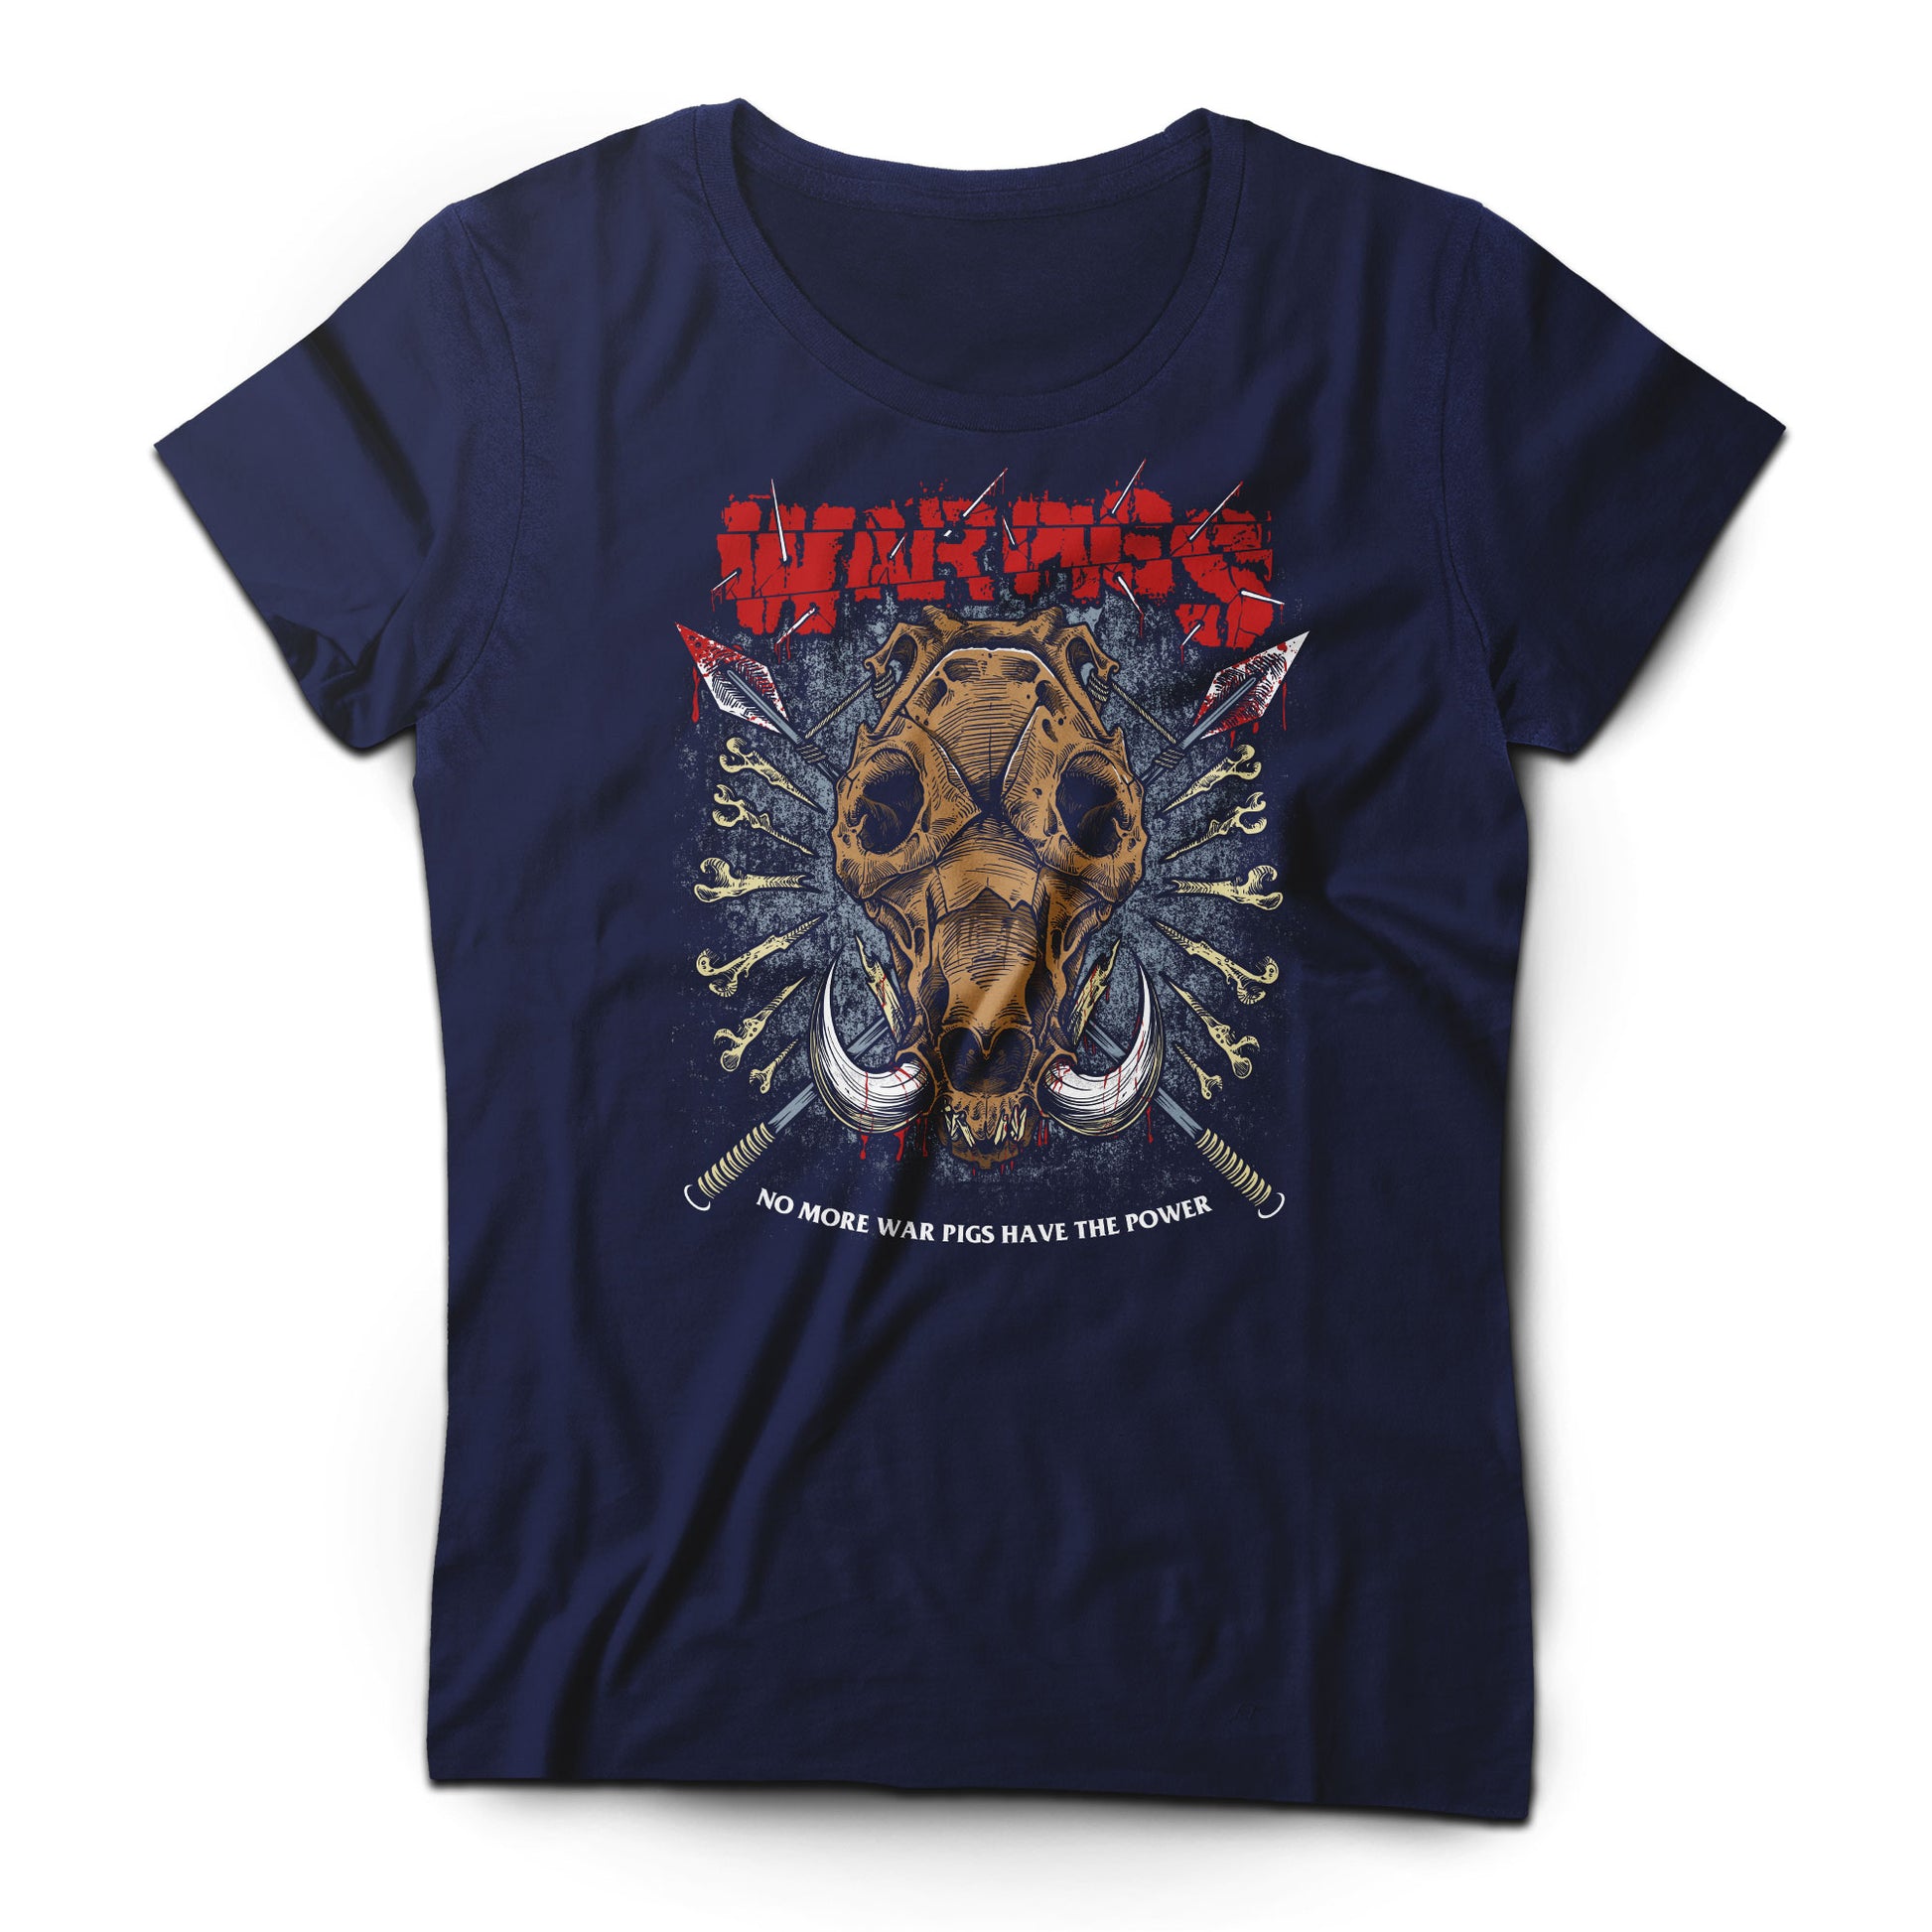 War Pigs - Women's T-shirt Rock